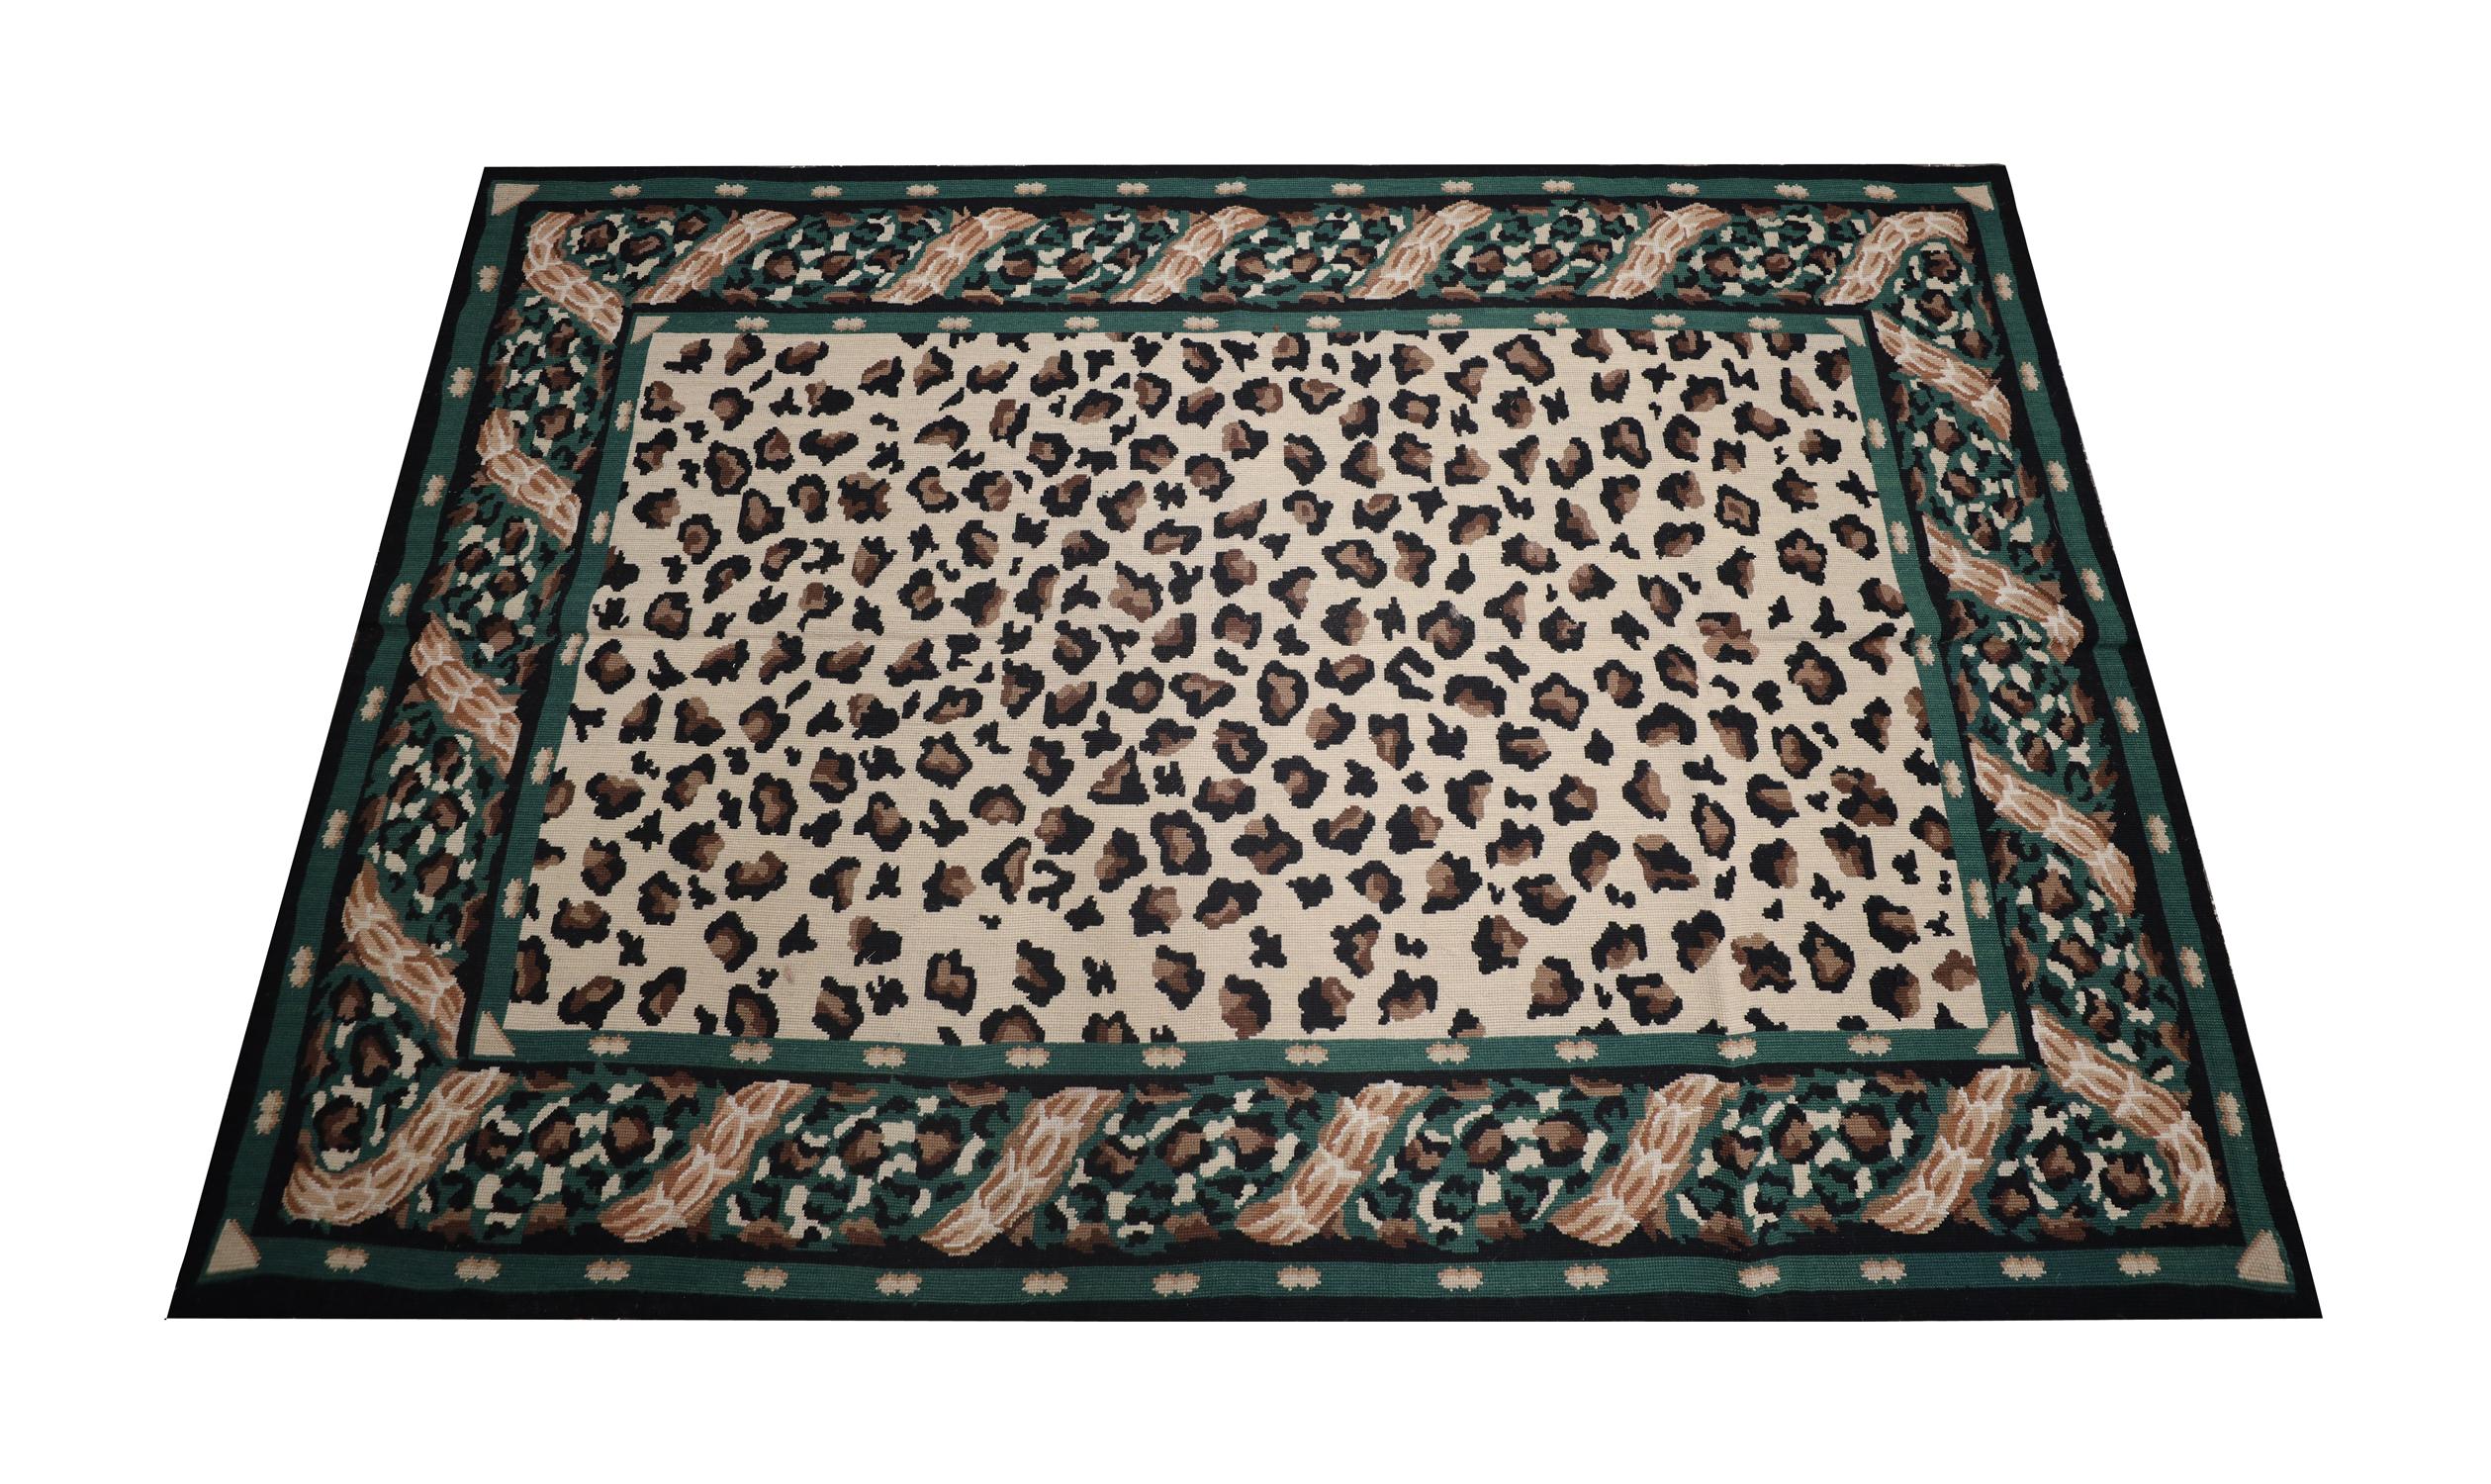 Dieser moderne Nadelspielteppich wurde mit einer modernen Farbpalette aus Grün, Braun und Beige gewebt, die das einzigartige Leopardenmuster bilden. Von Hand aus feiner handgesponnener Wolle und Baumwolle gewebt, ist es nicht nur ein akzentuierendes